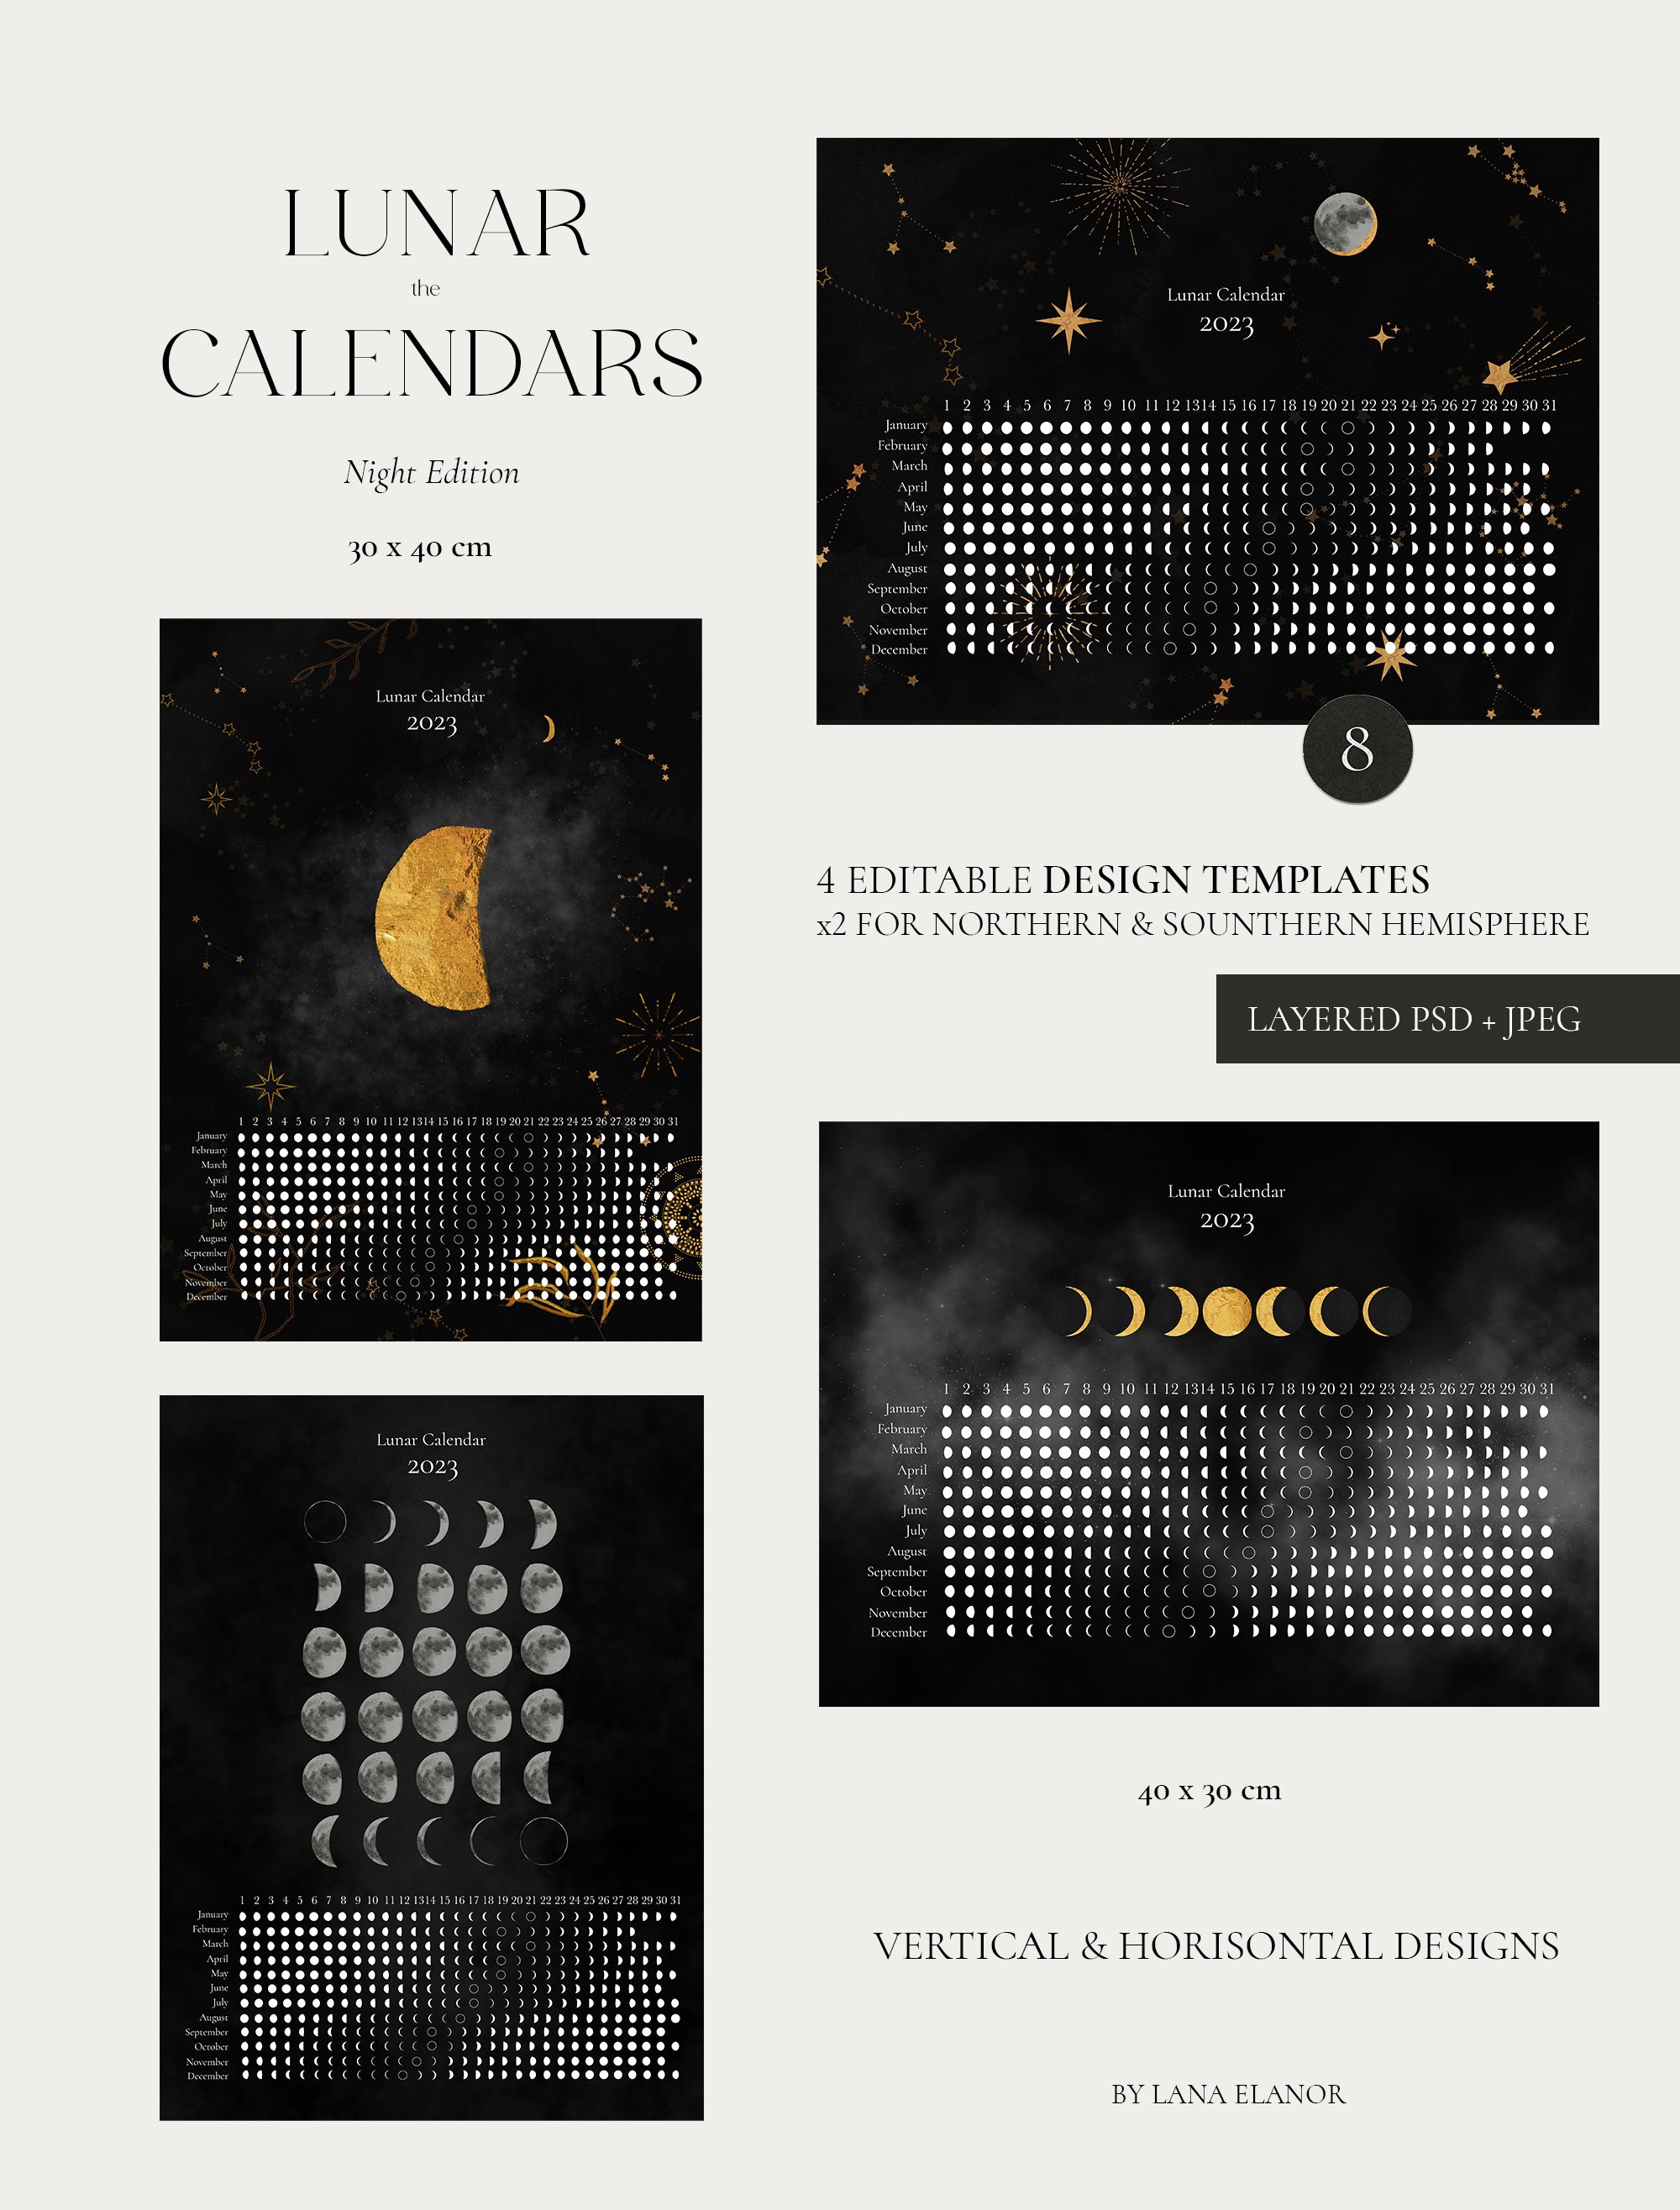 2023 LUNAR CALENDAR - Night Edition preview image.